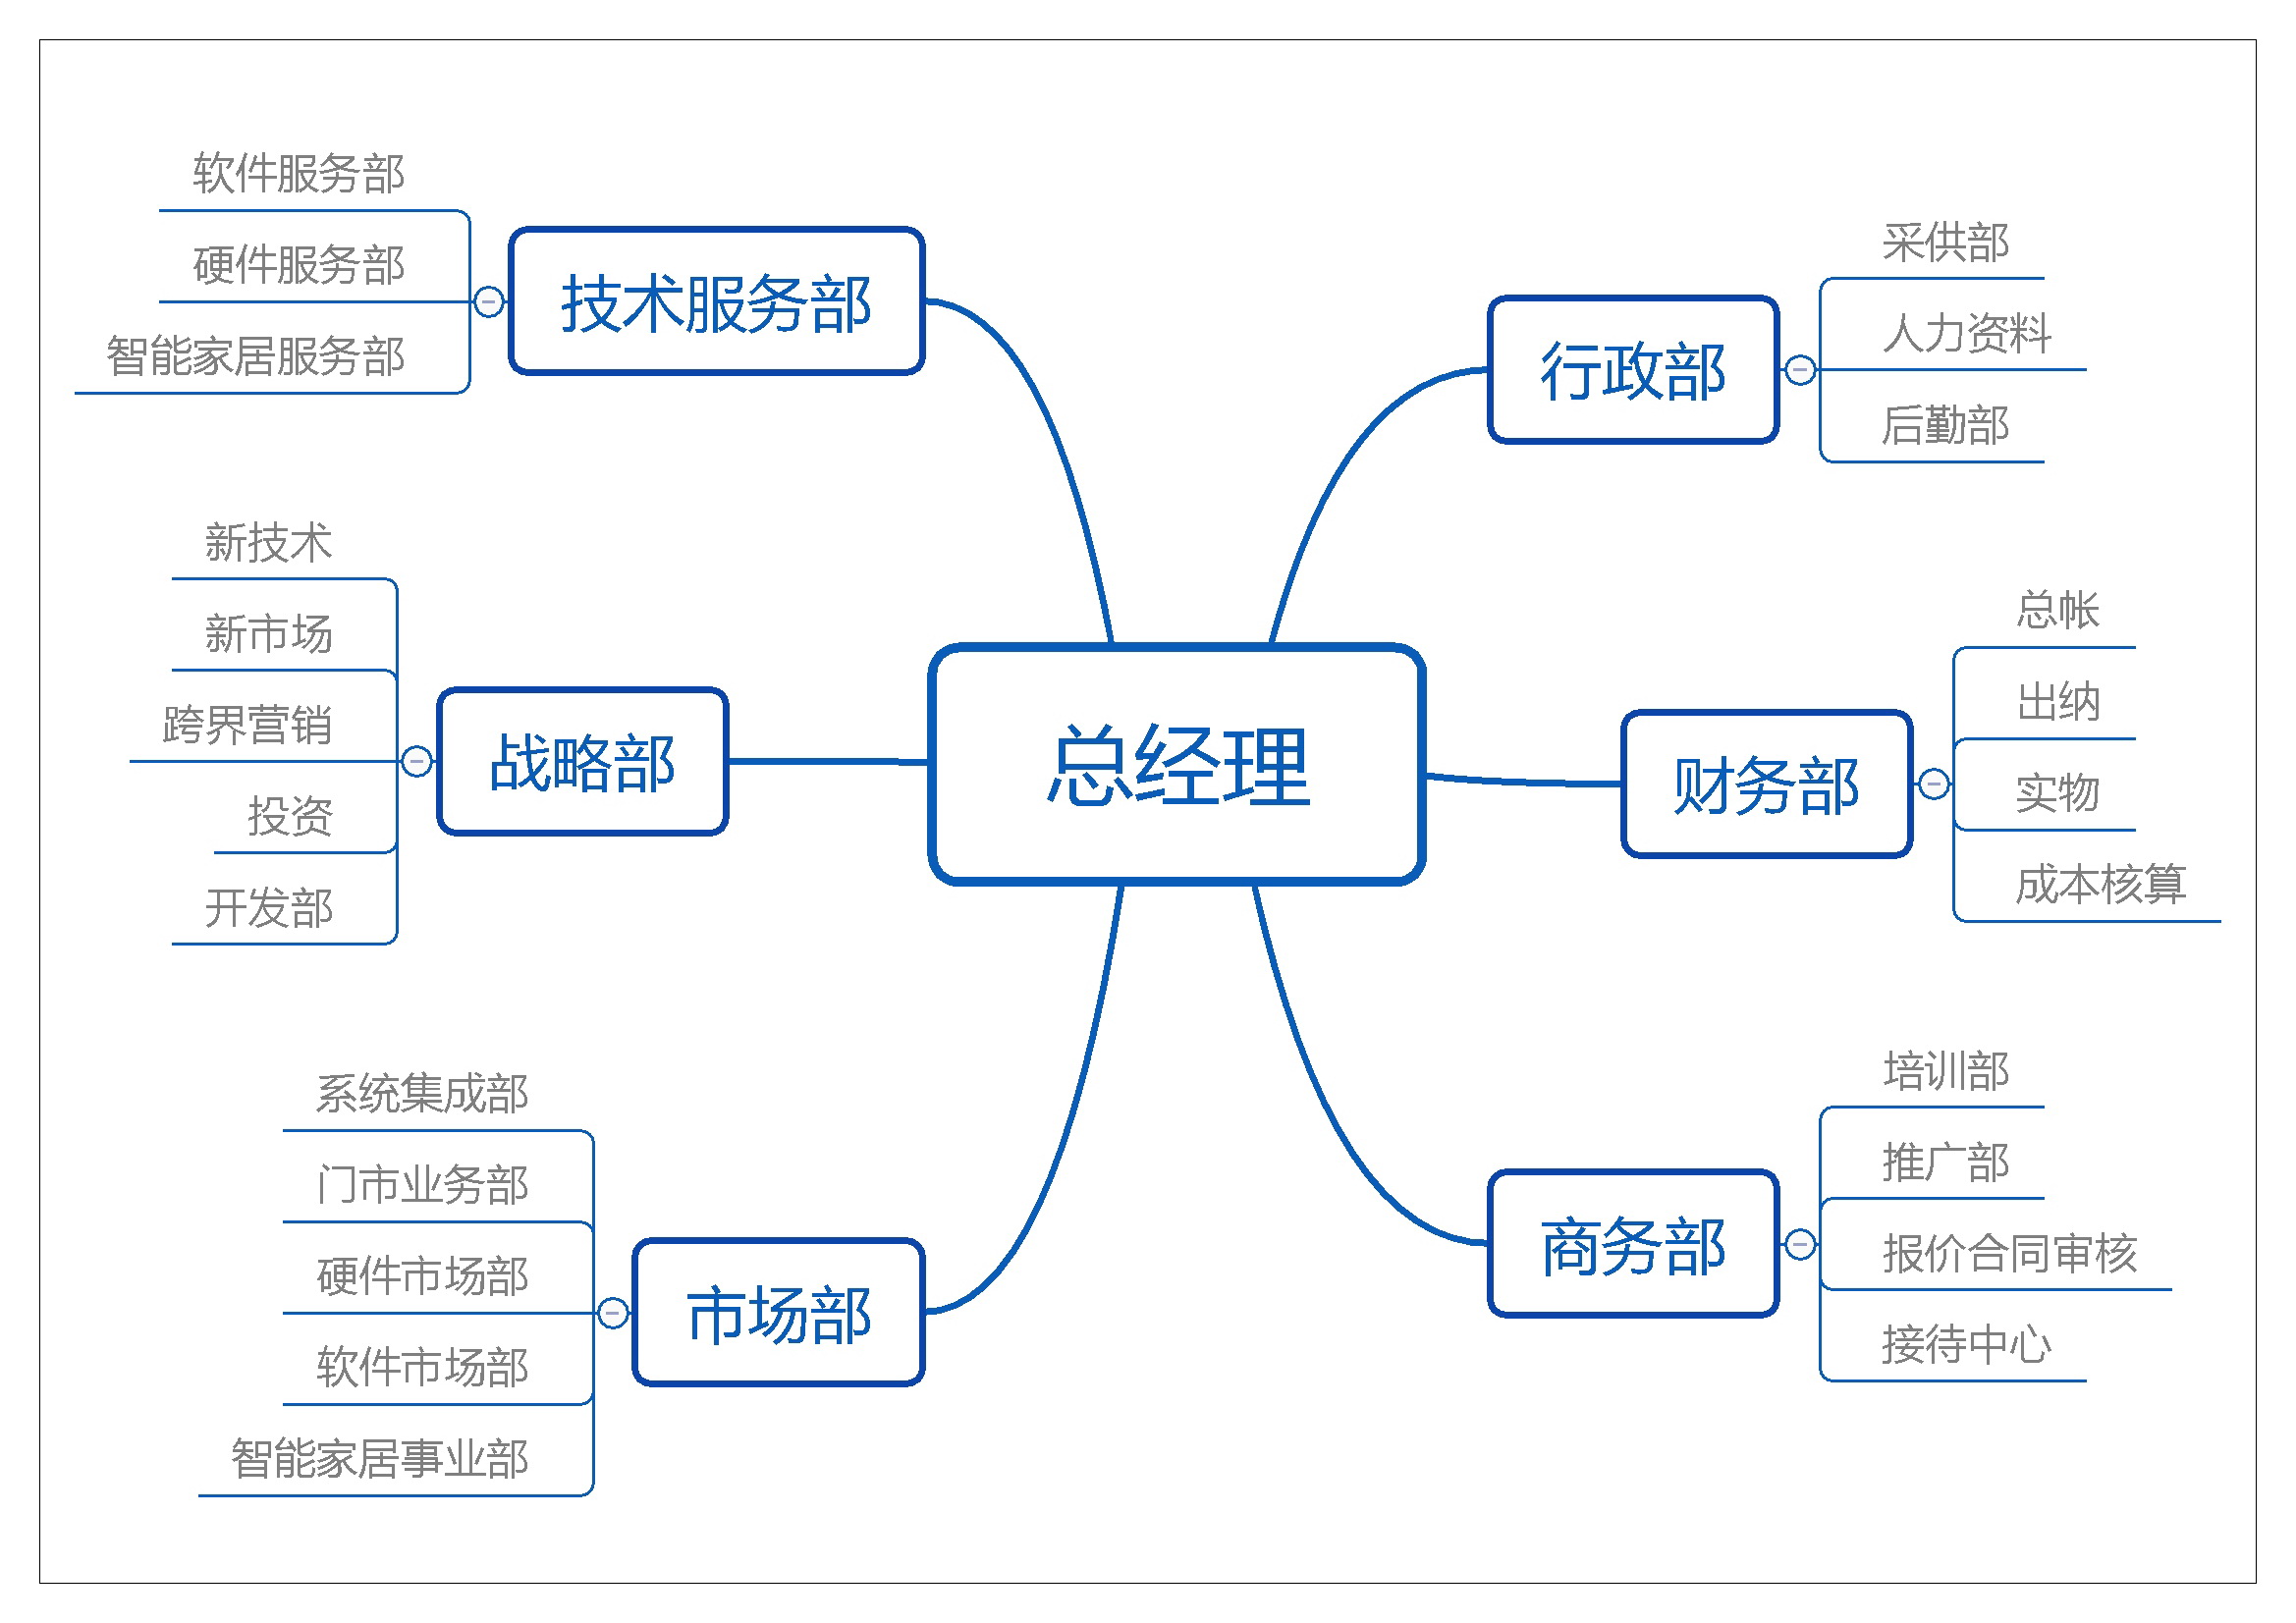 江苏友联组织结构图-大图